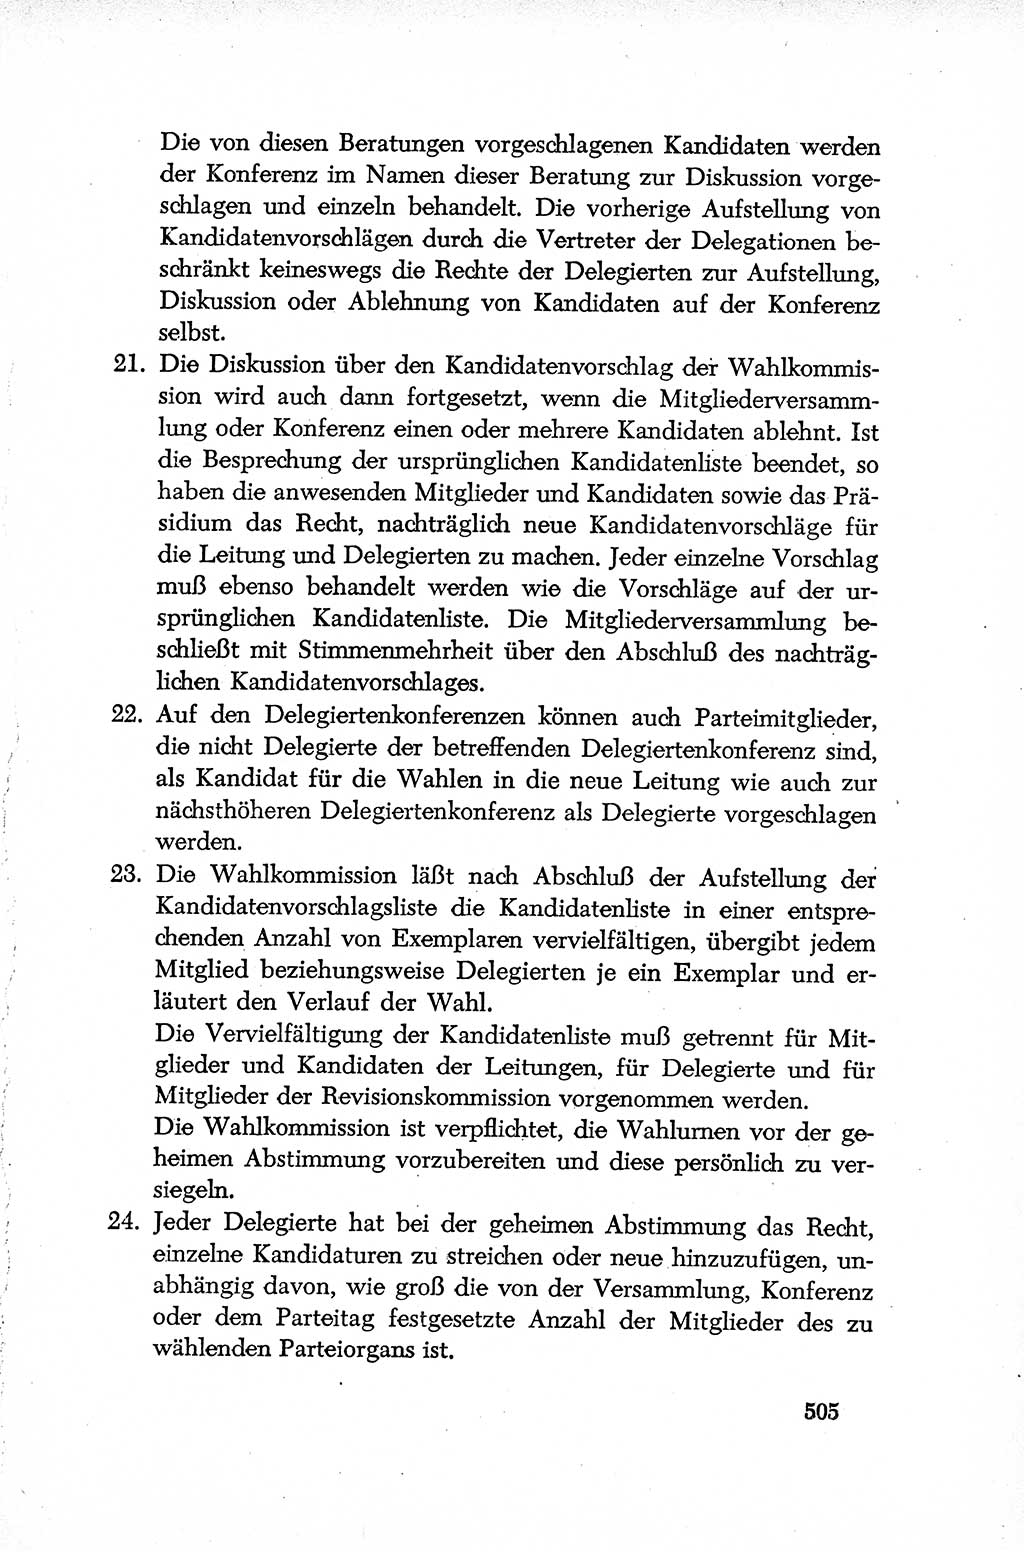 Dokumente der Sozialistischen Einheitspartei Deutschlands (SED) [Deutsche Demokratische Republik (DDR)] 1952-1953, Seite 505 (Dok. SED DDR 1952-1953, S. 505)